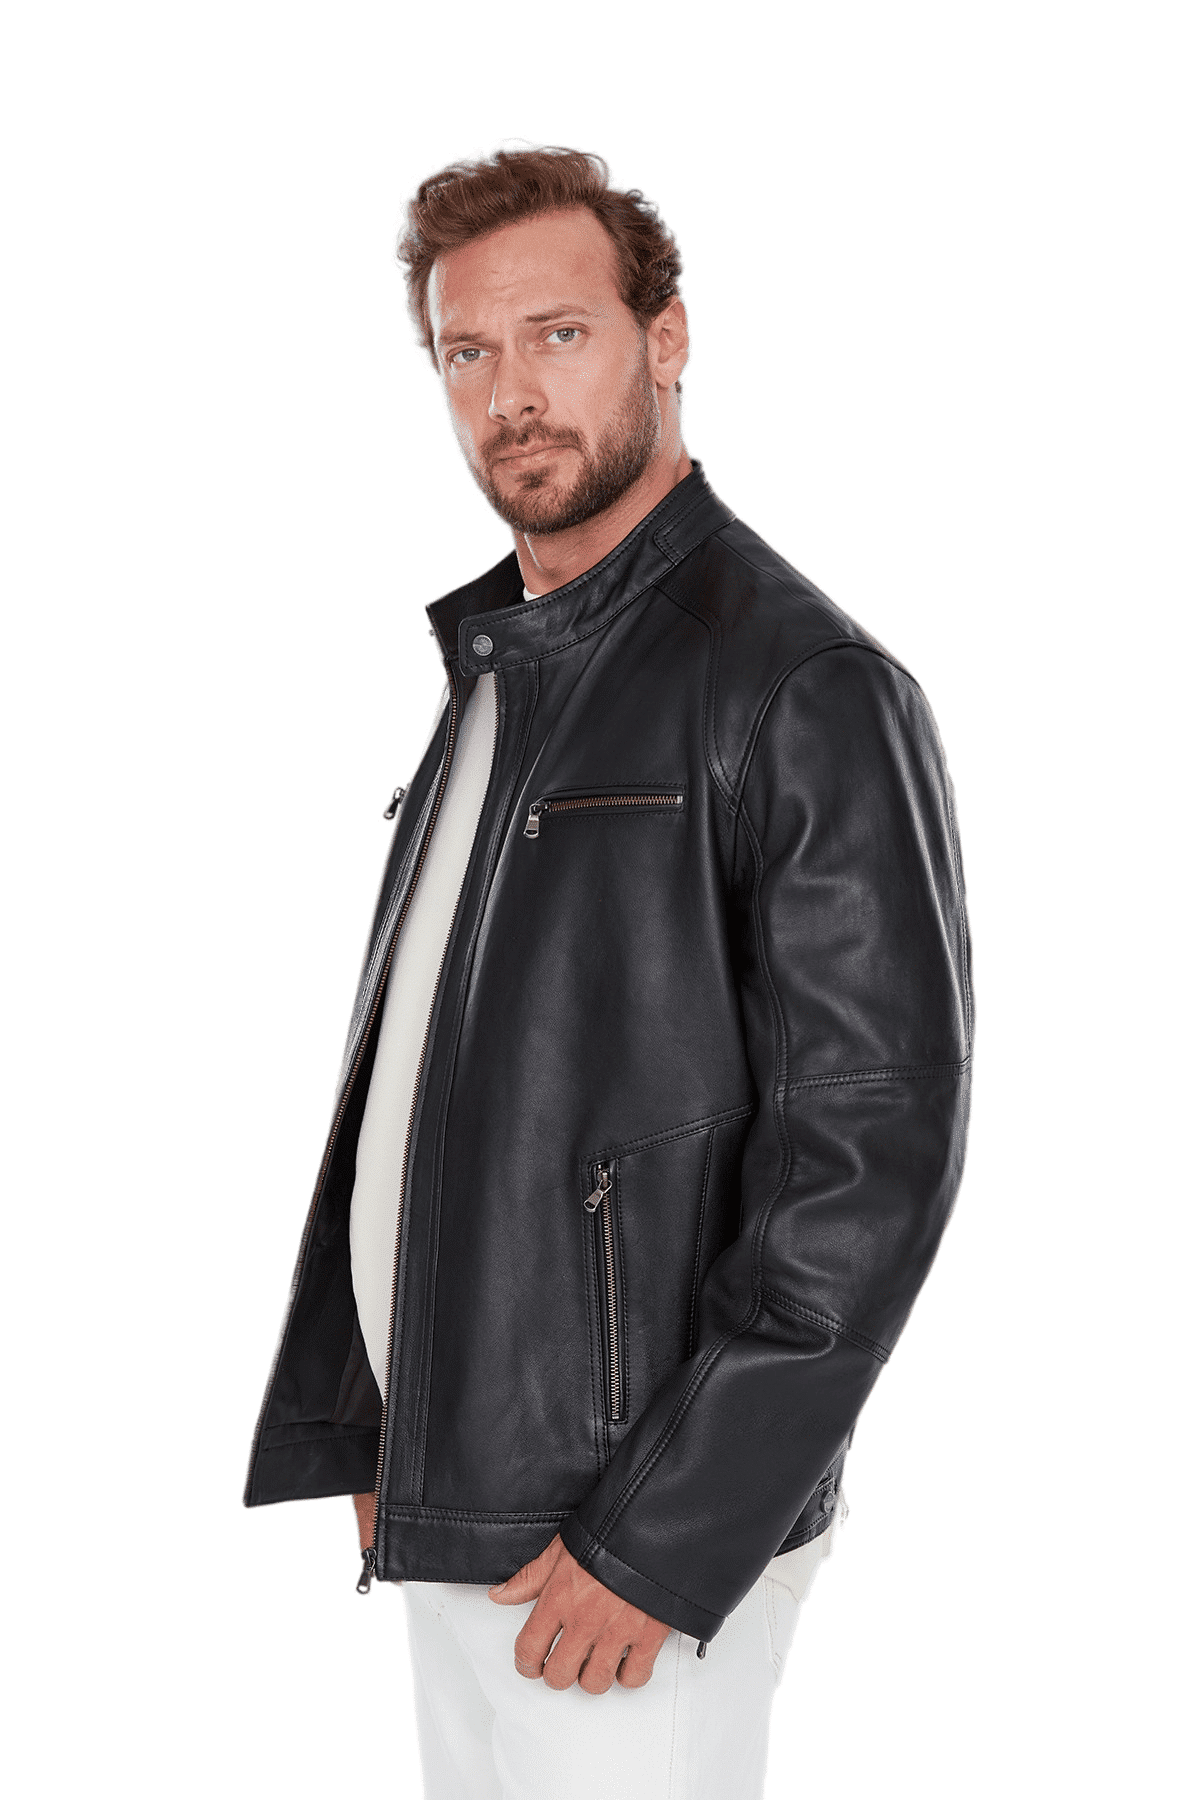 Alanzo black plus size cafe racer stylish biker leather jacket